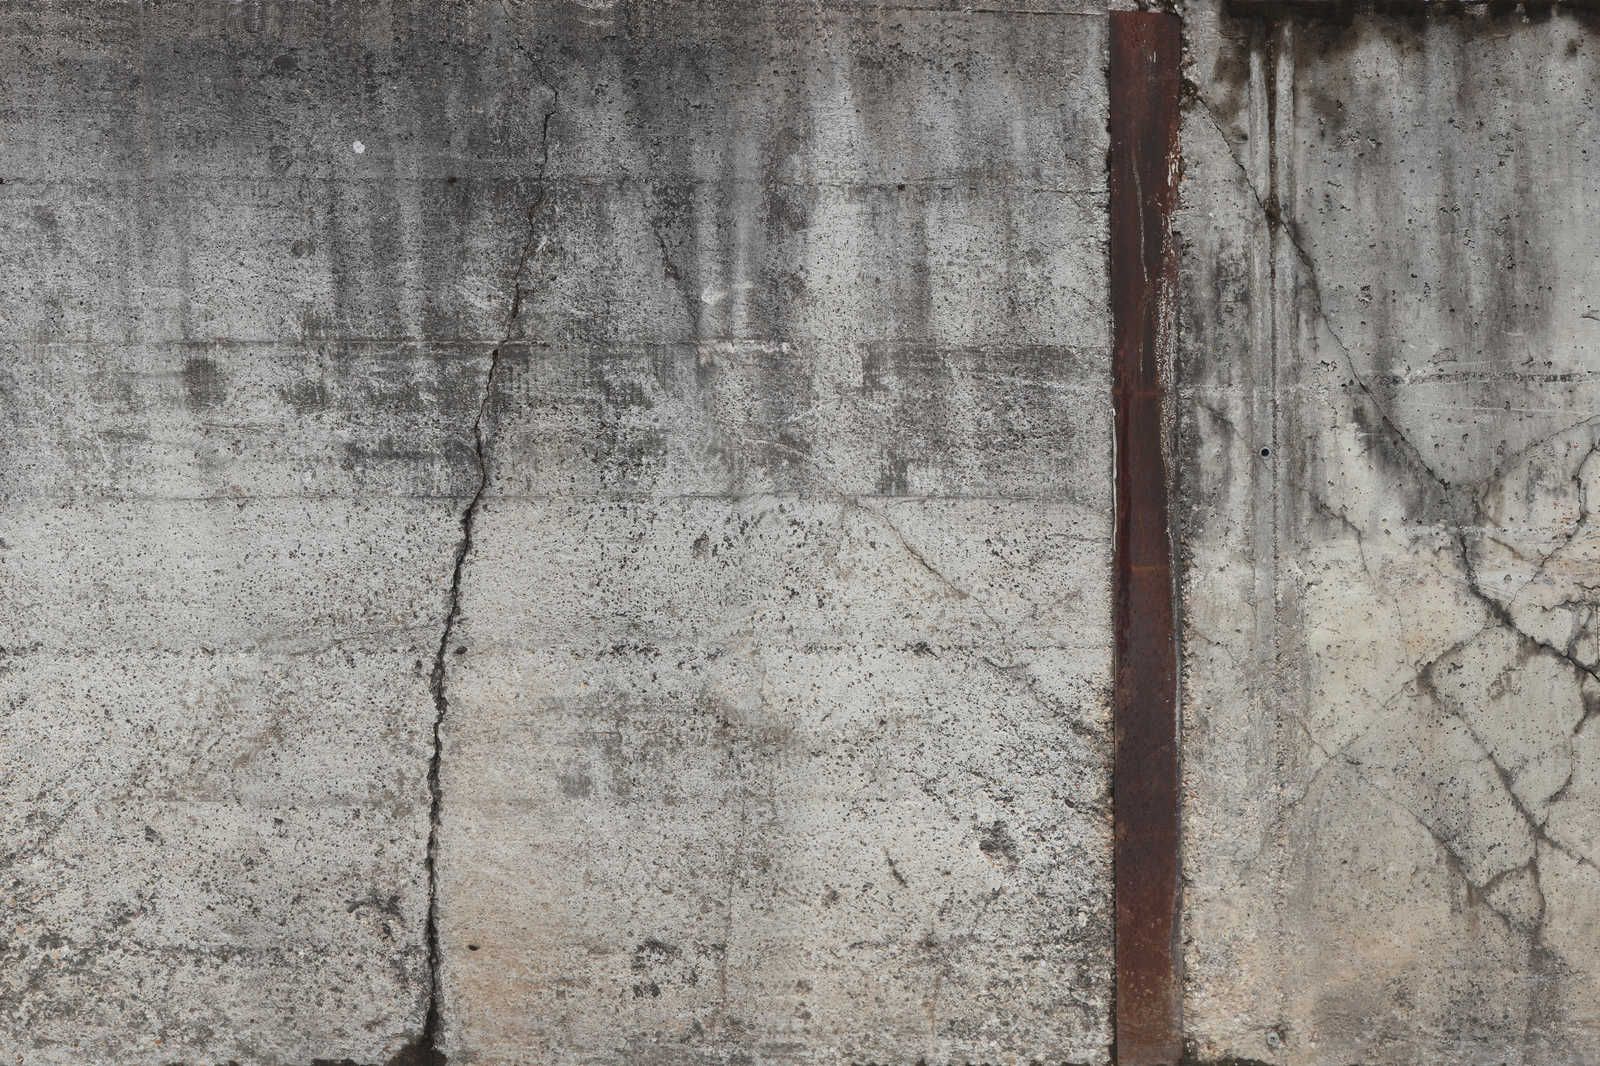             Lienzo Pintura concreto Estilo Rústico Muro concreto Armado - 0,90 m x 0,60 m
        